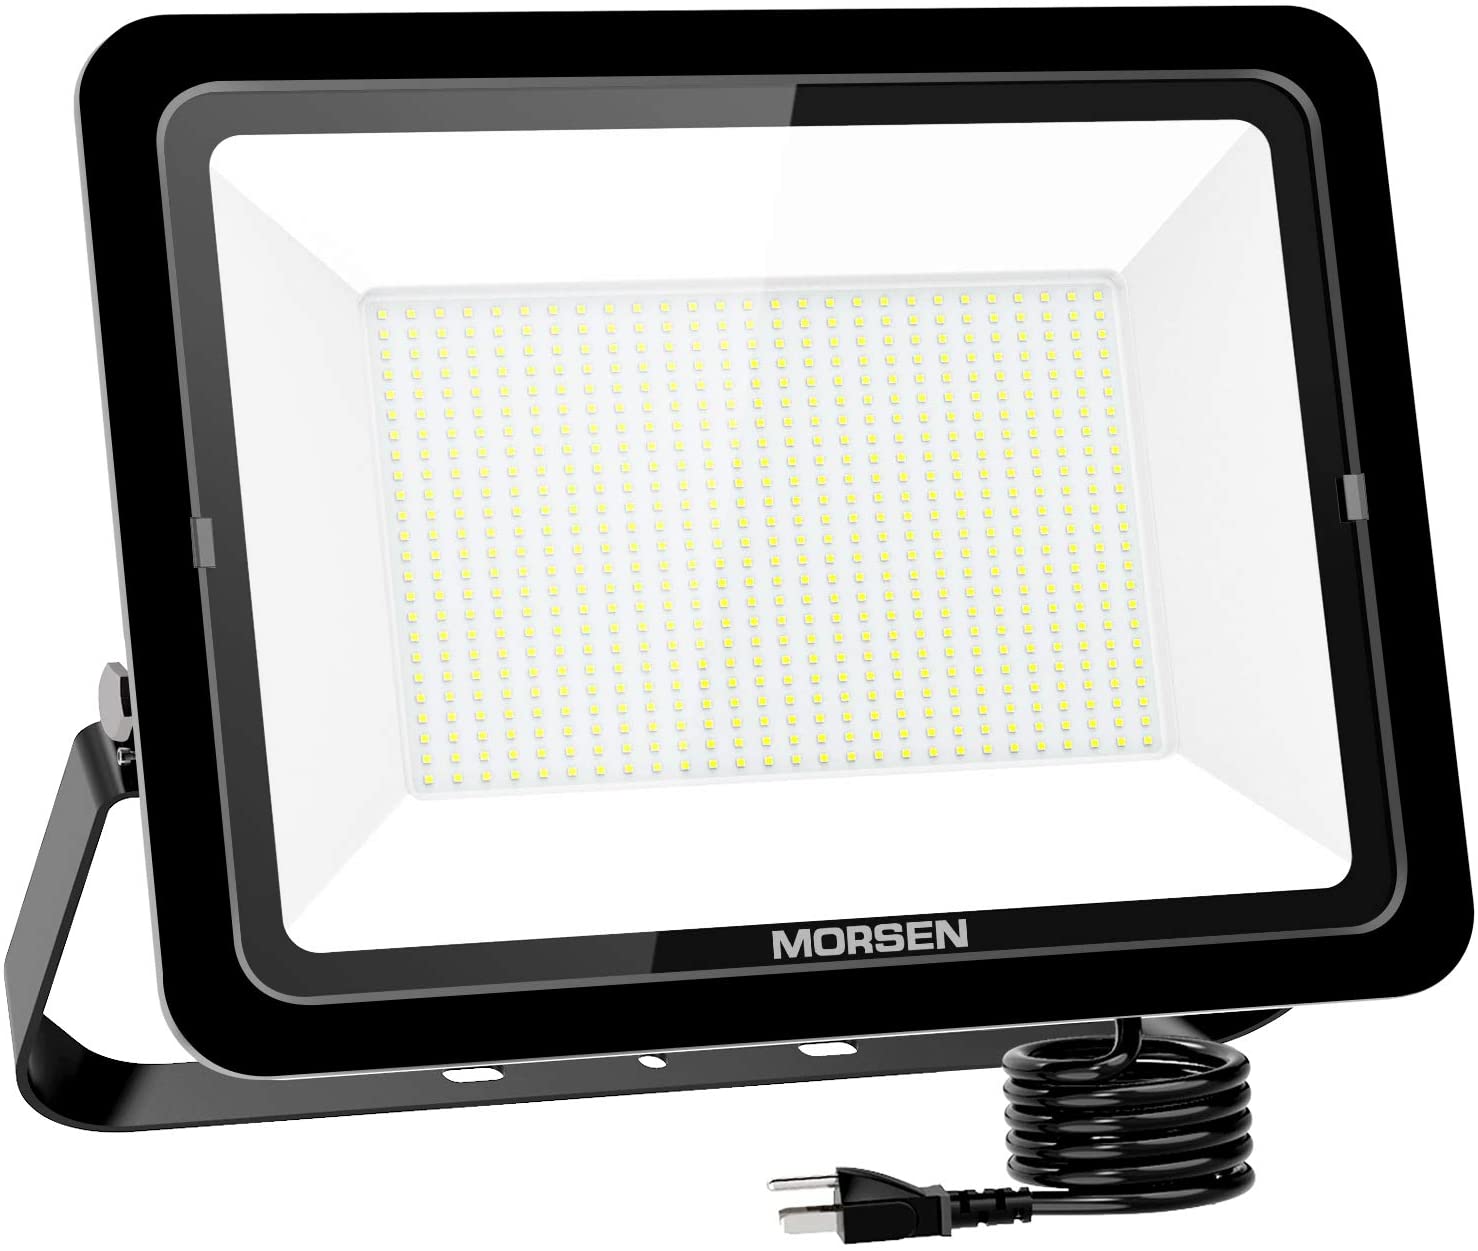 MORSEN 600W LED Flood Light